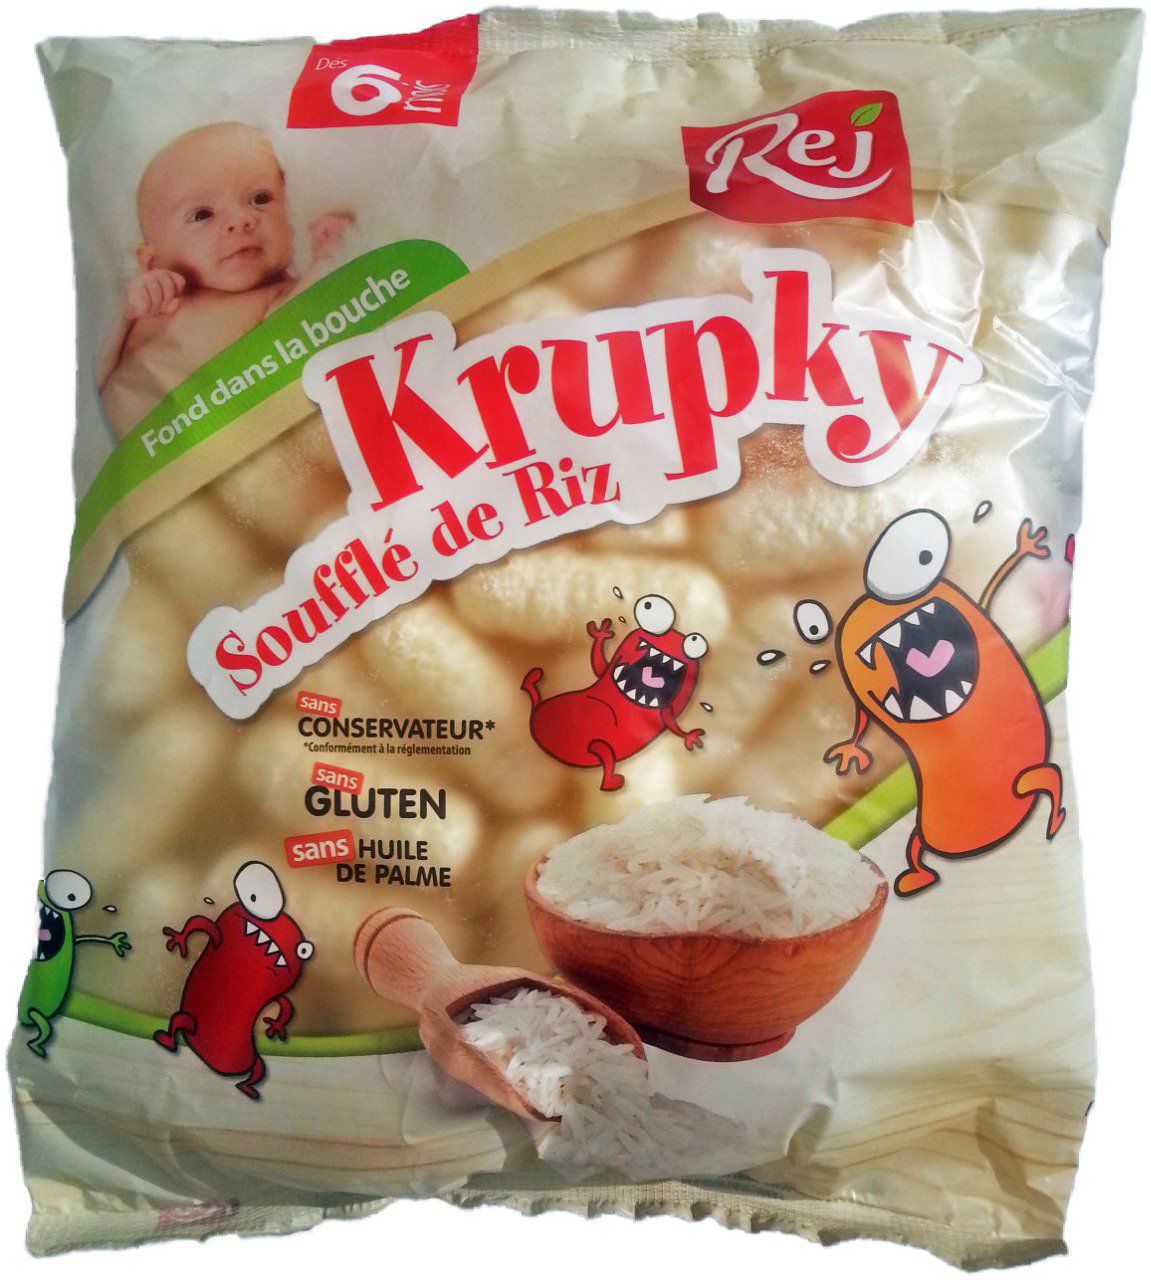 KRUPKY soufflé de riz pour bébé (dès 6 mois) - Sachet de 85g. - Krupky